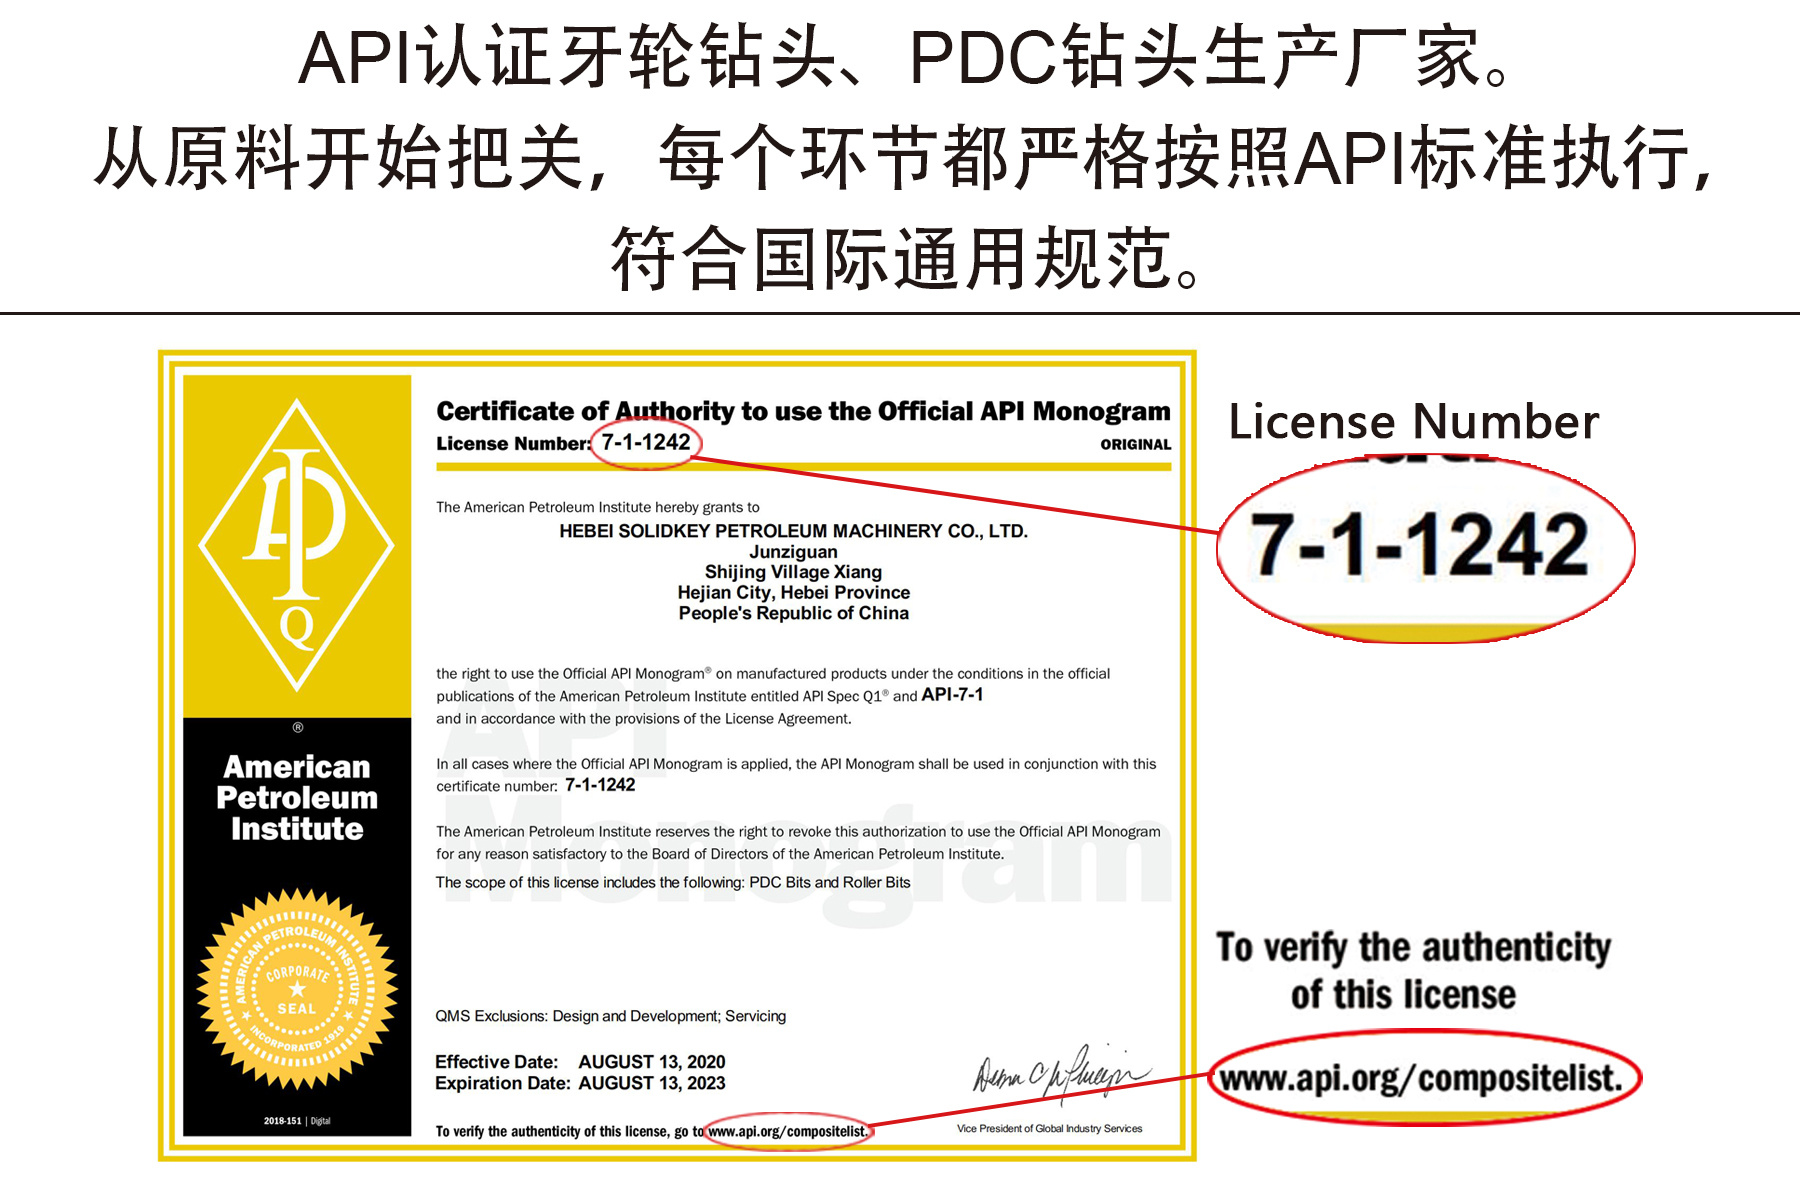 API License Photo